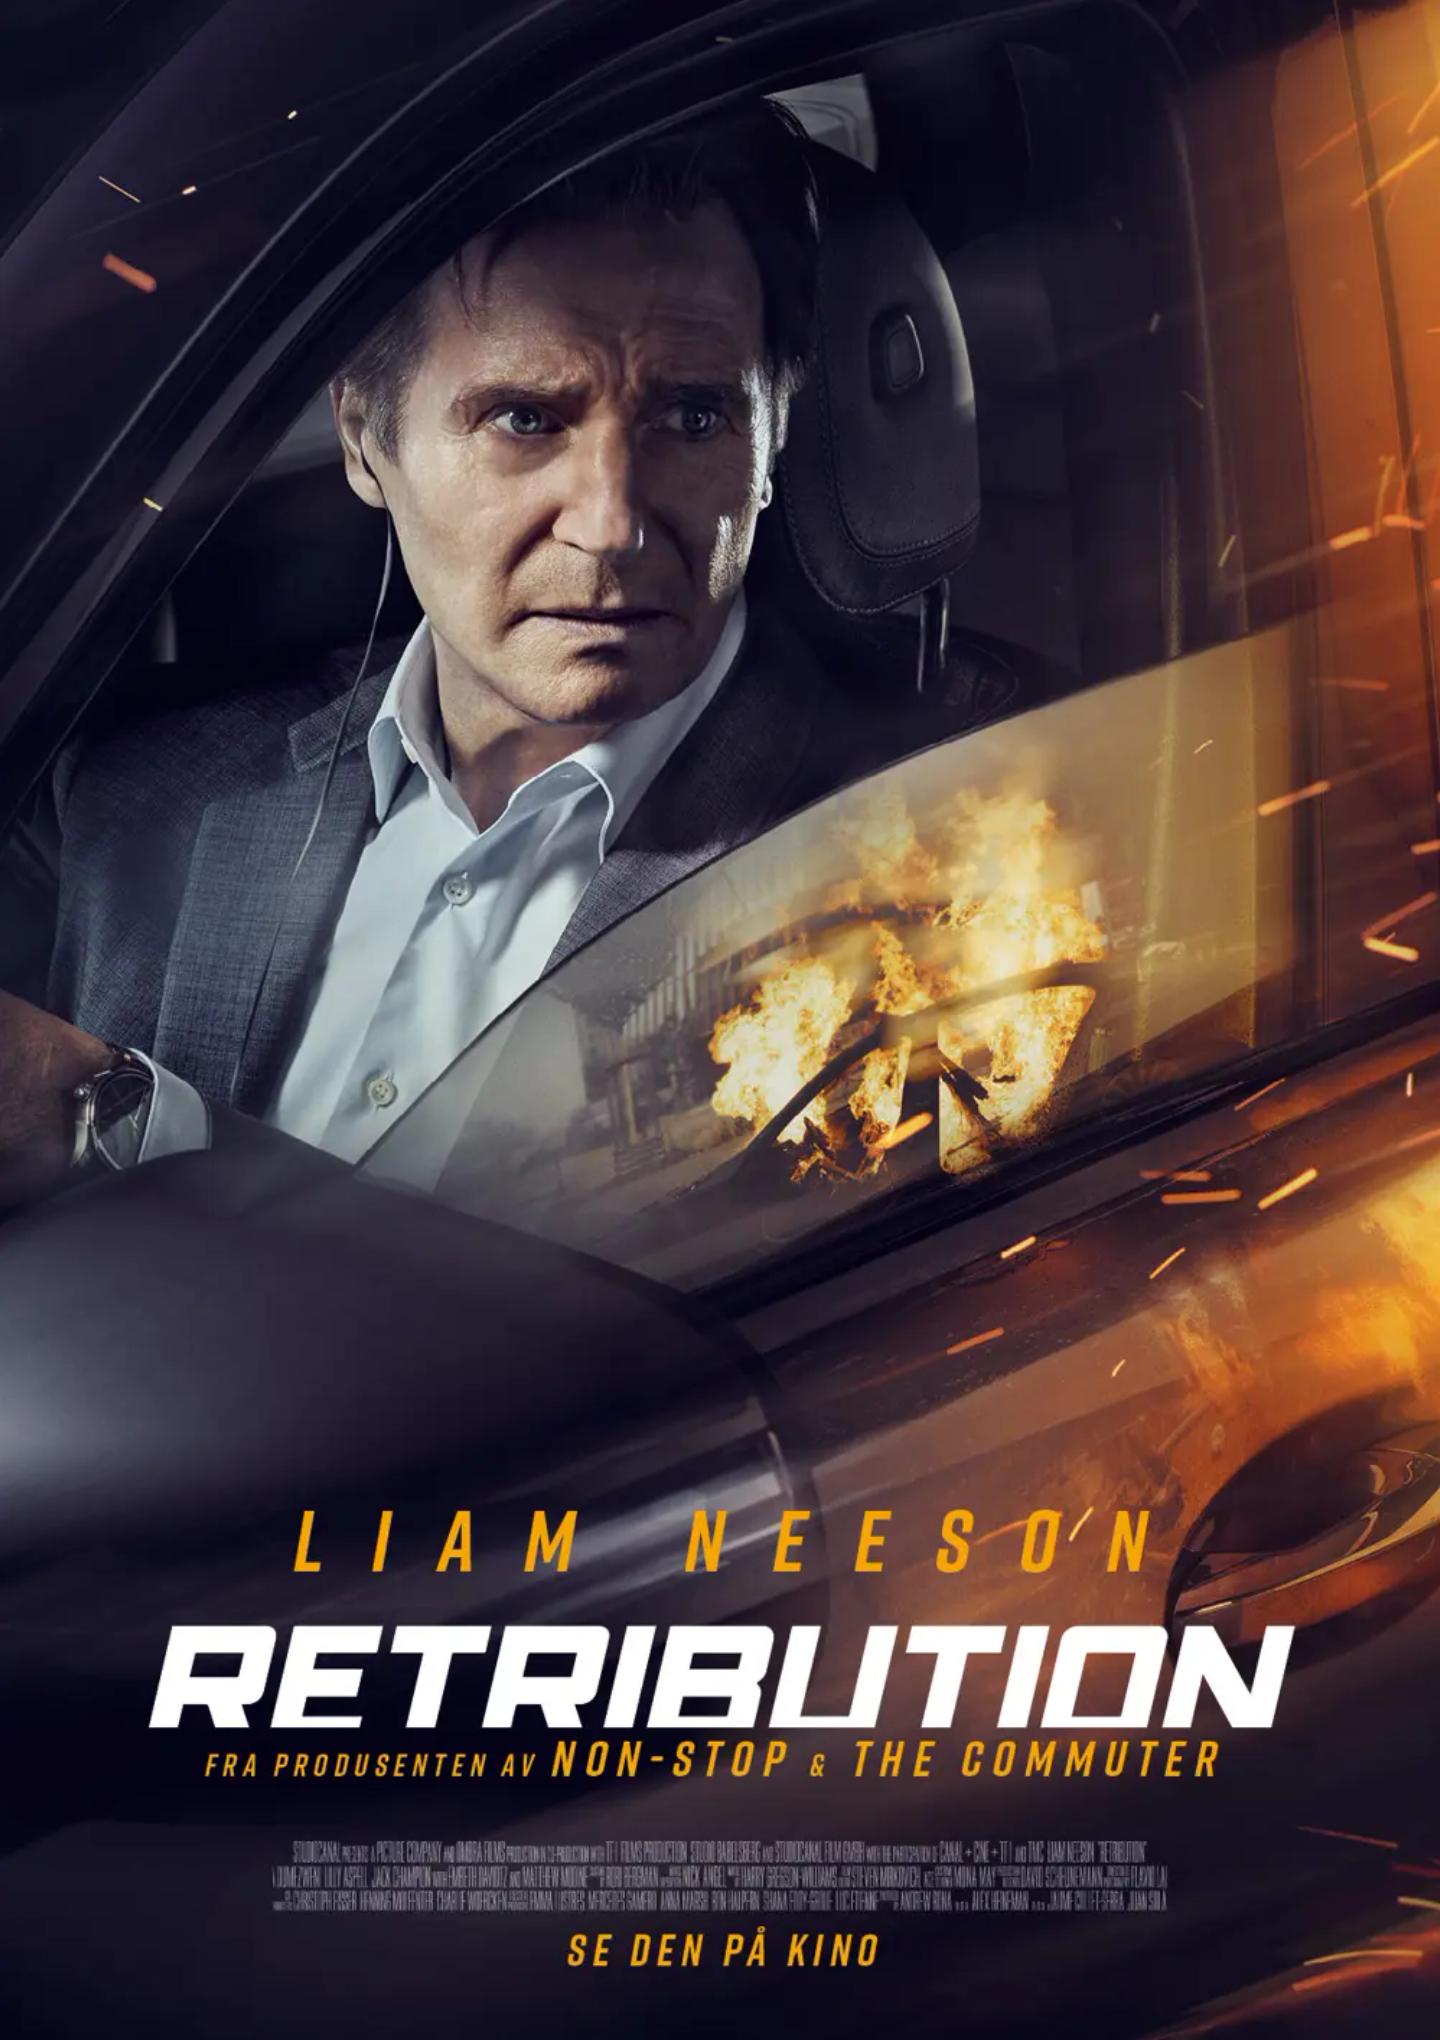 Plakat for 'Retribution'